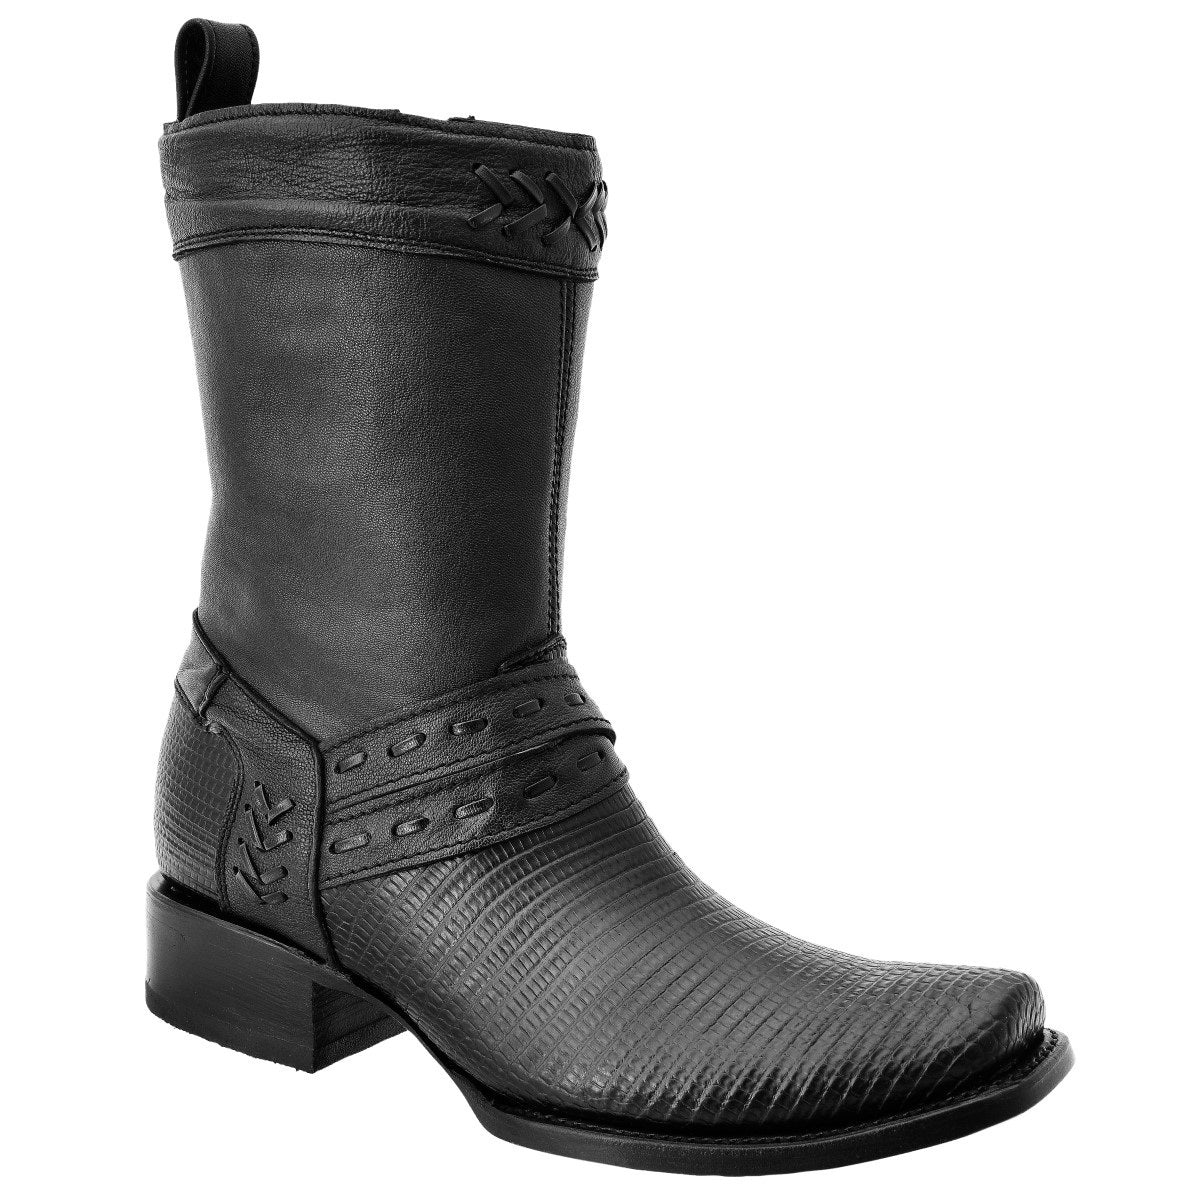 Botas Vaqueras TM-WD0014 - Western Boots